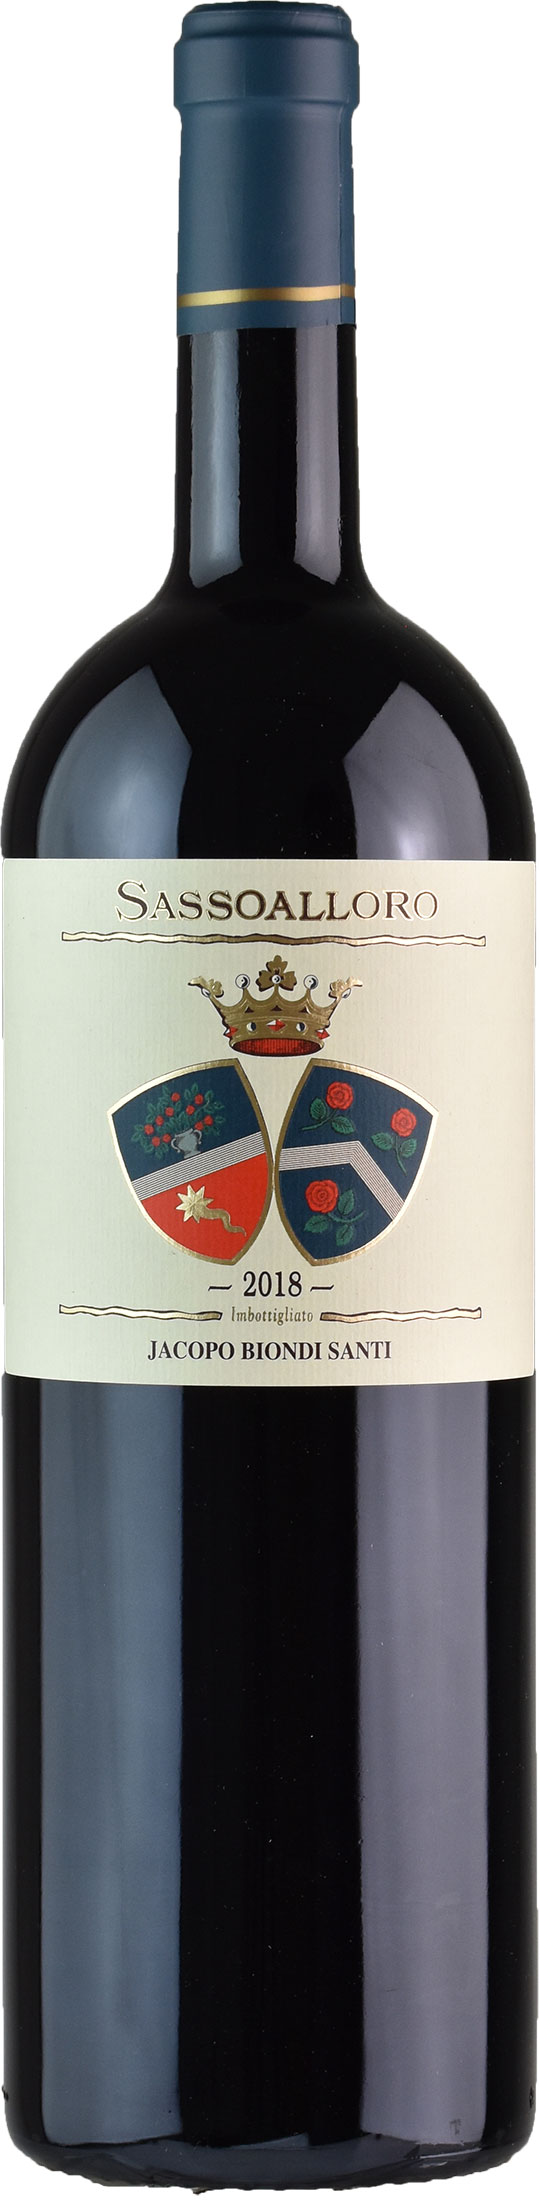 Jacopo Biondi Santi Sassoalloro Magnum 2018